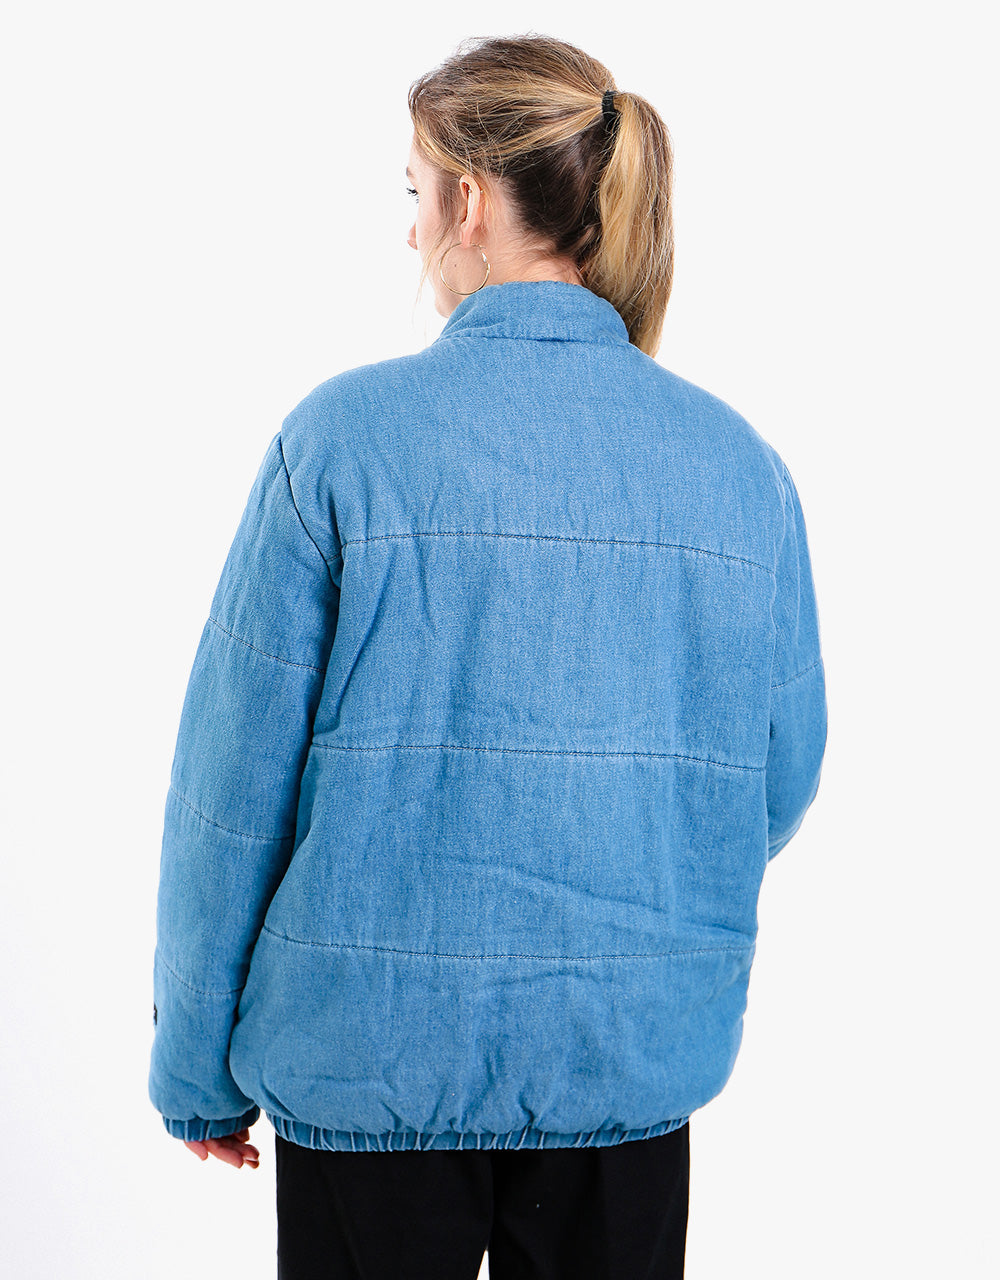 Kickers® Womens Denim Puffer Jacket - Mid Blue